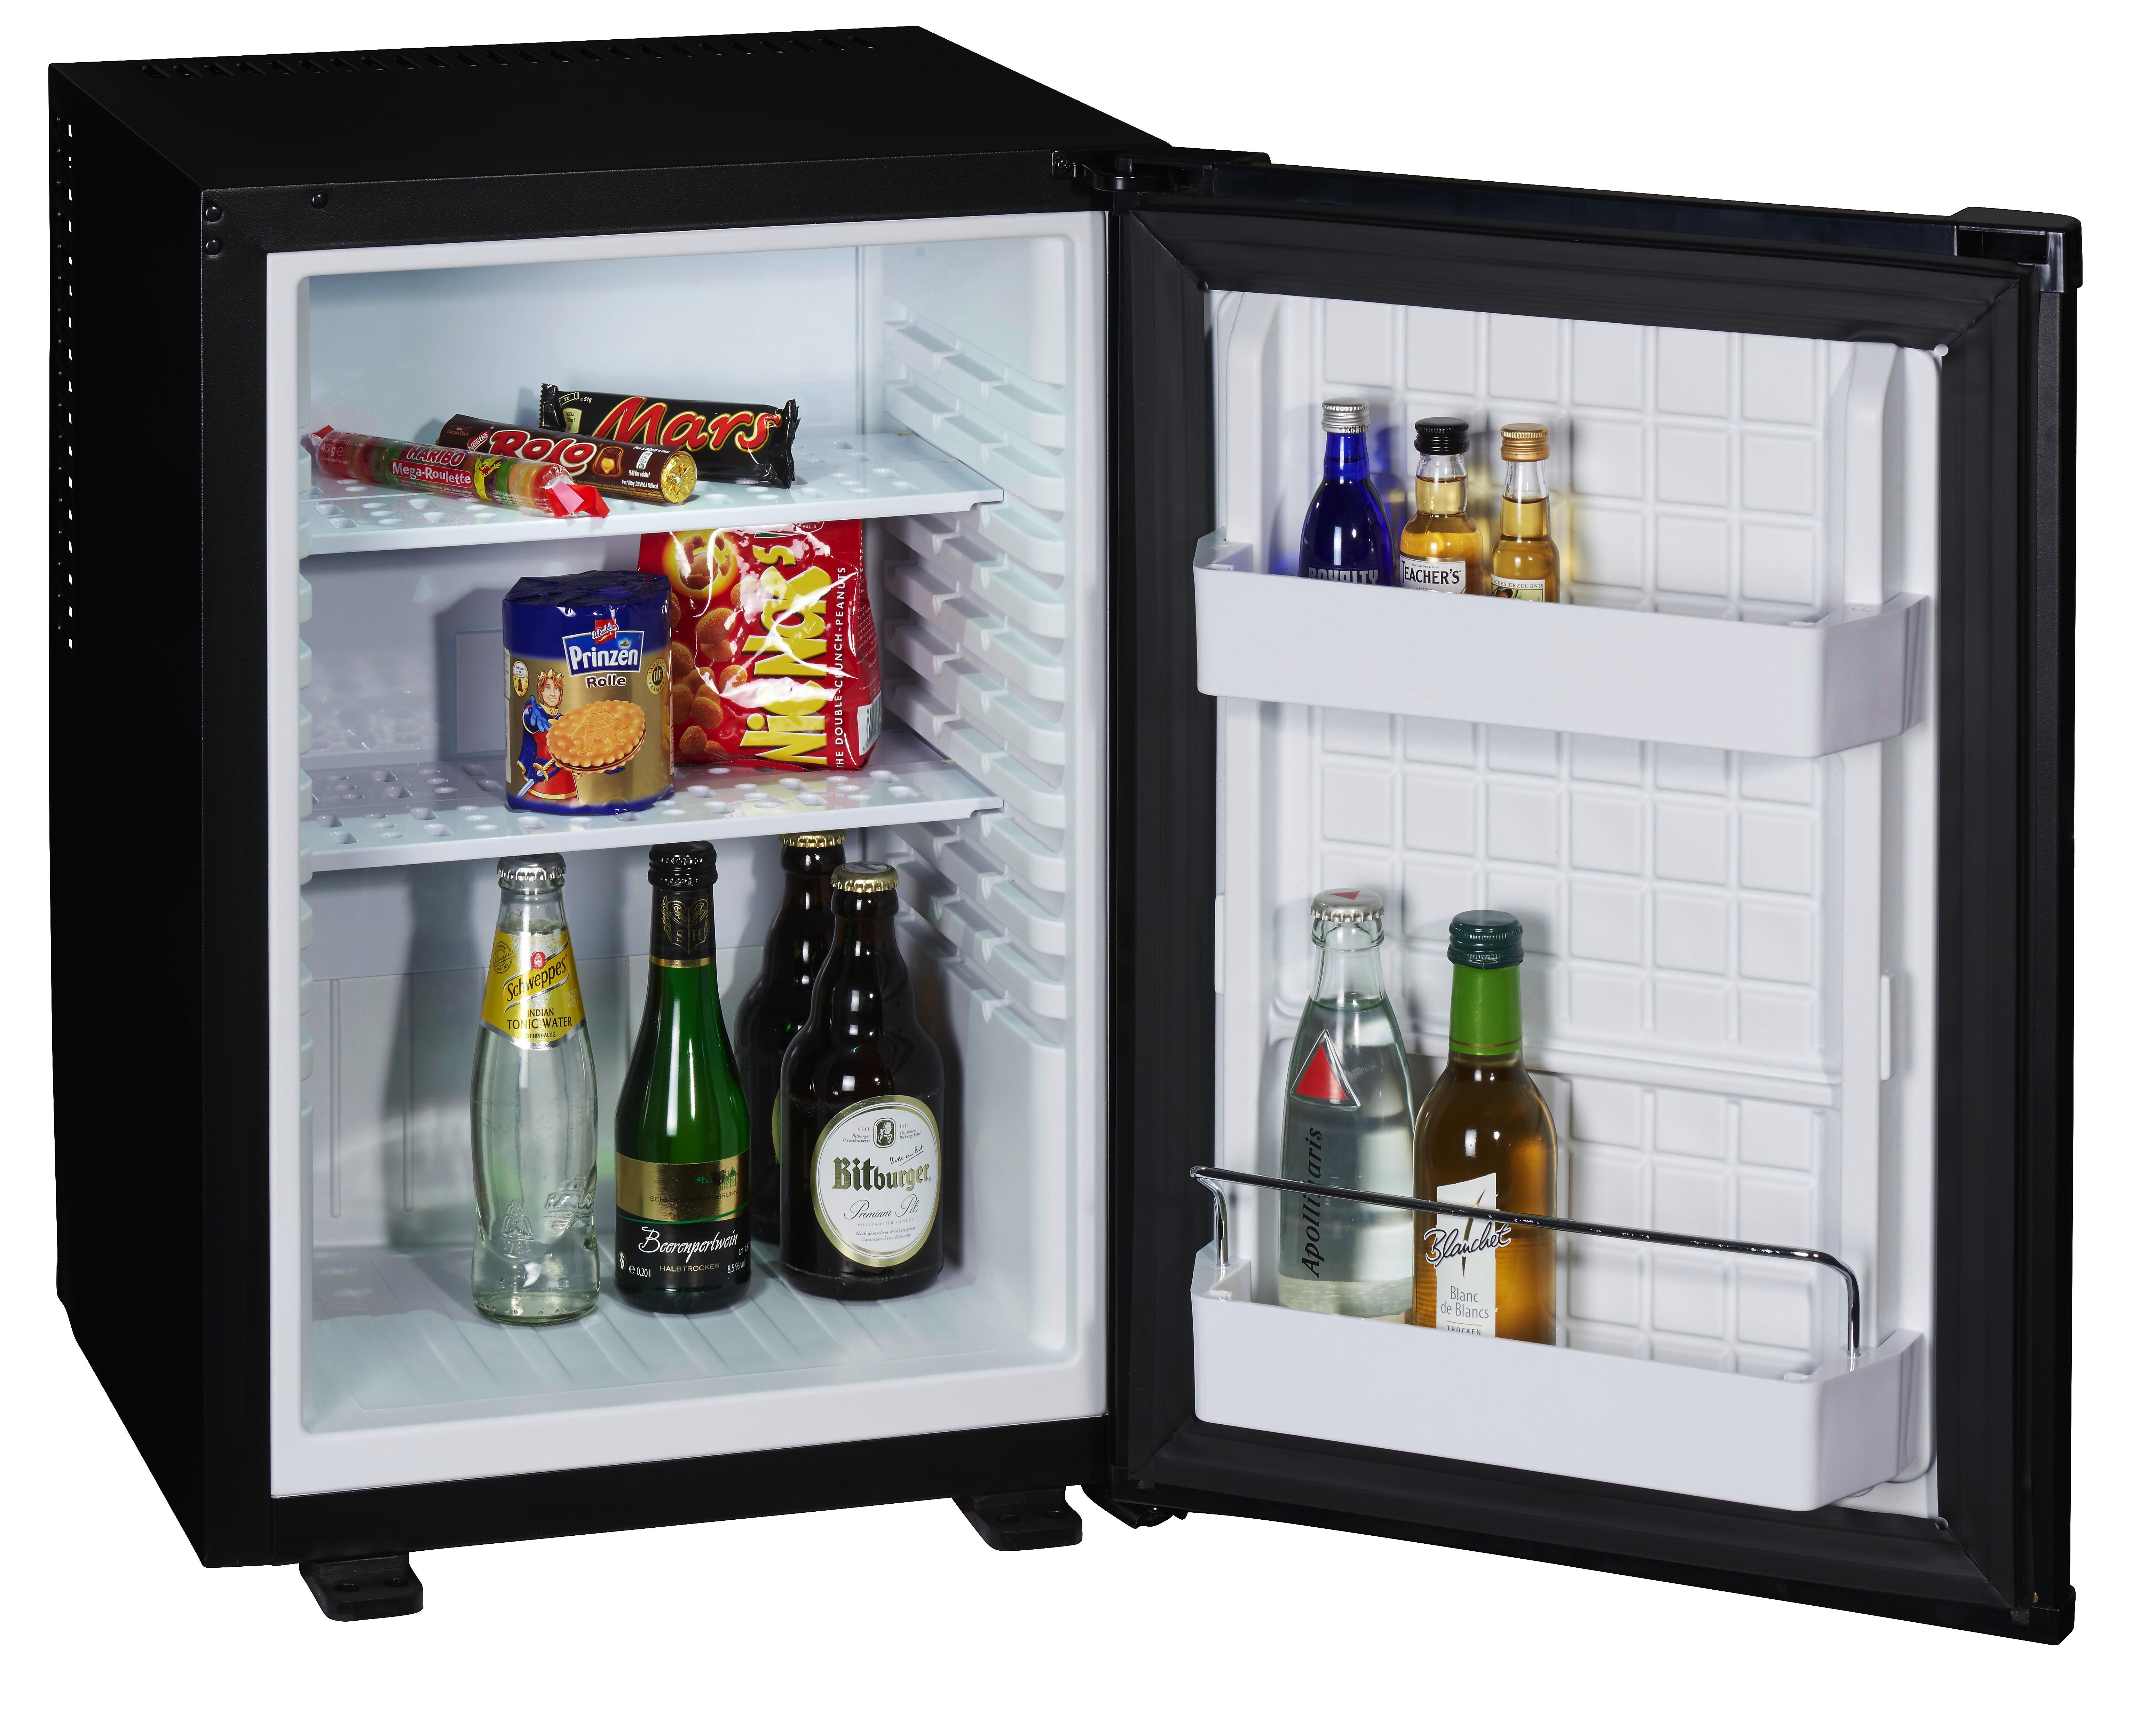 Mini-Kühlschrank kaufen: Coole Modelle für Wohnzimmer & Büro